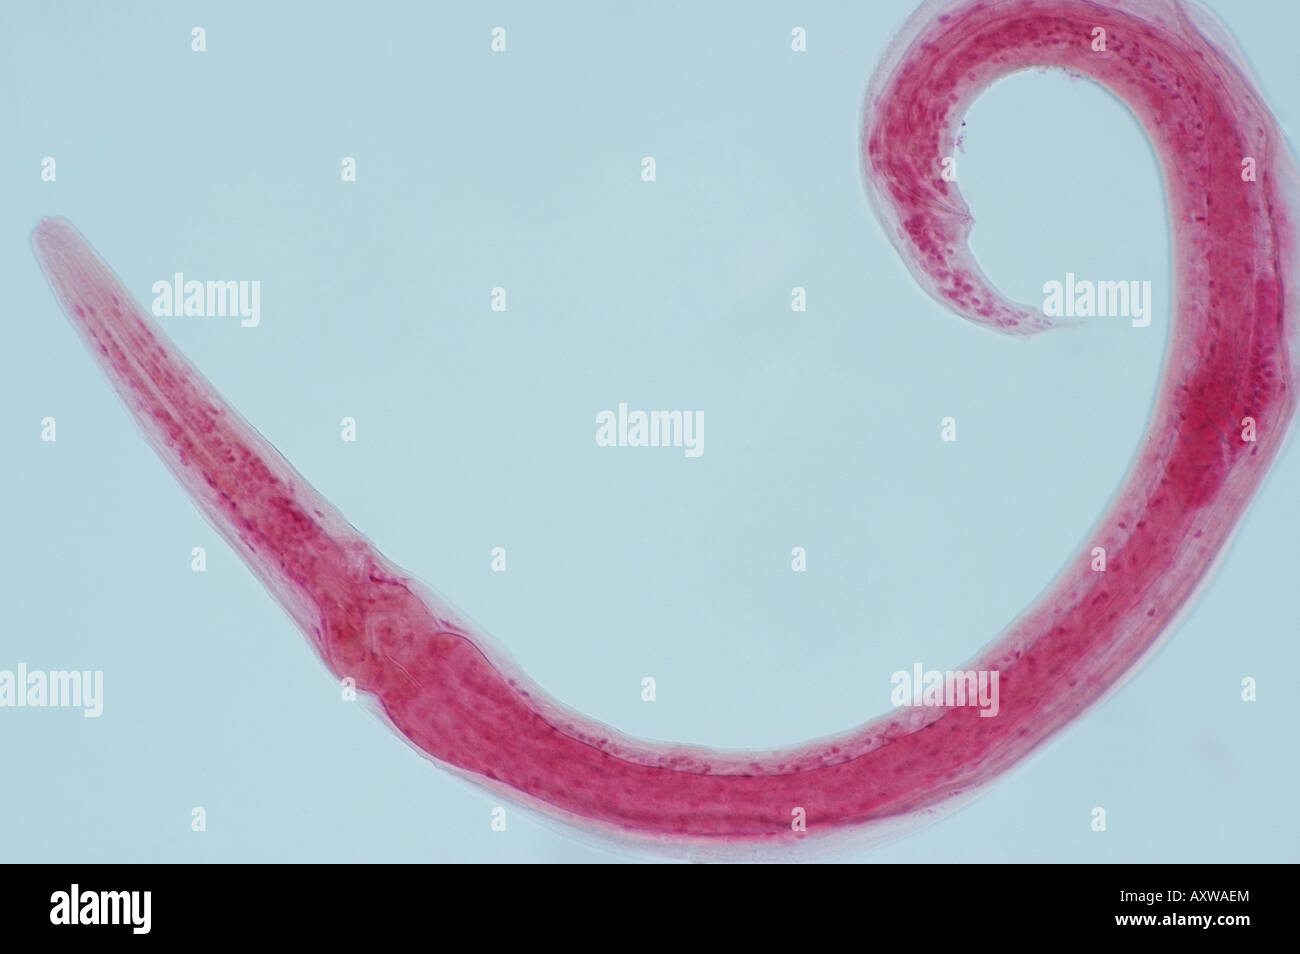 microscopic worm Stock Photo